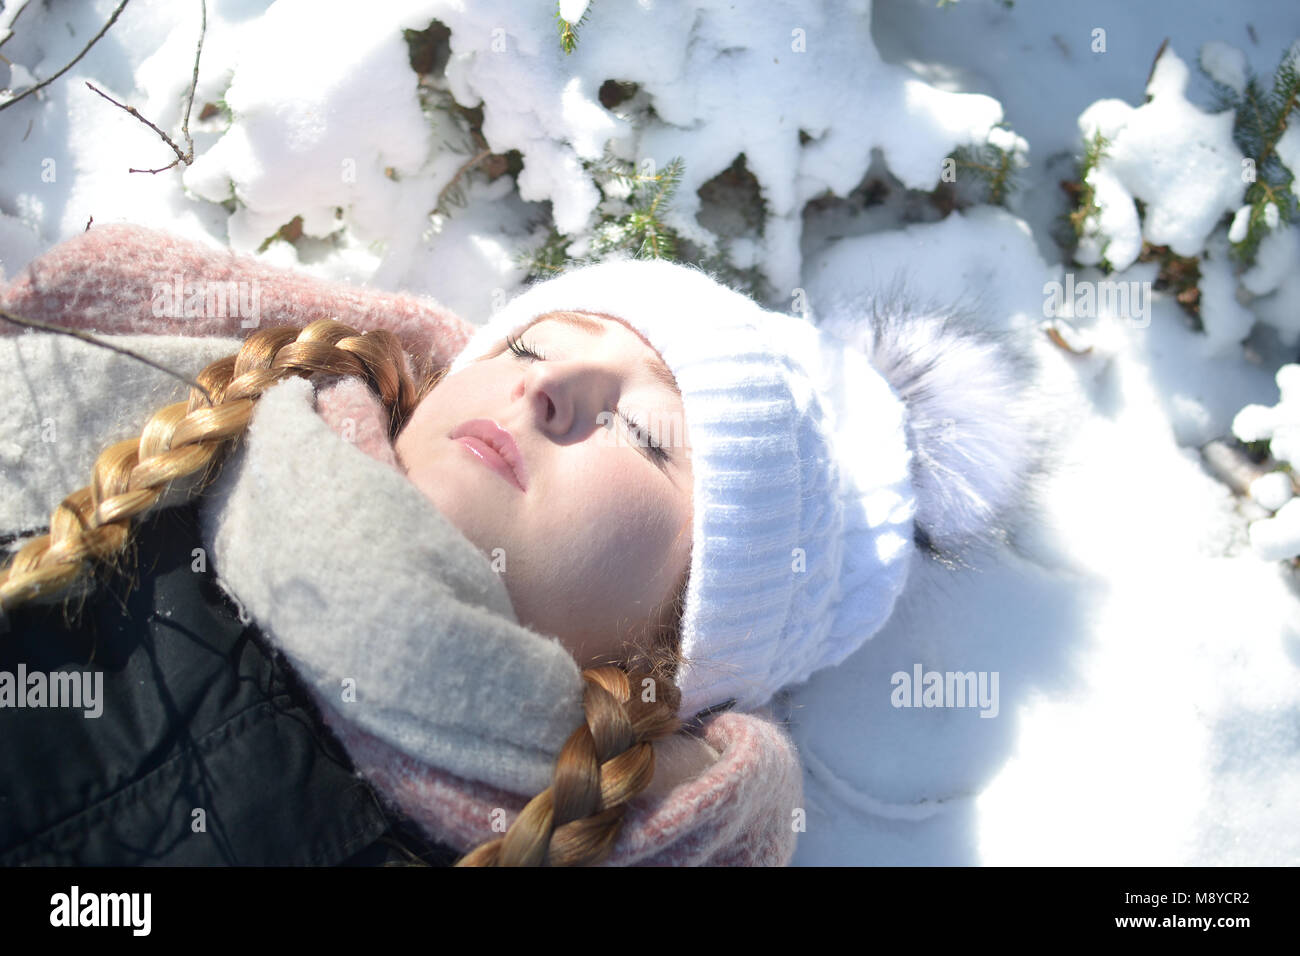 Eine junge Frau mit warmer Kleidung und geschlossenen Augen liegt im Schnee. Ein Tagtraum Szene. Stockfoto